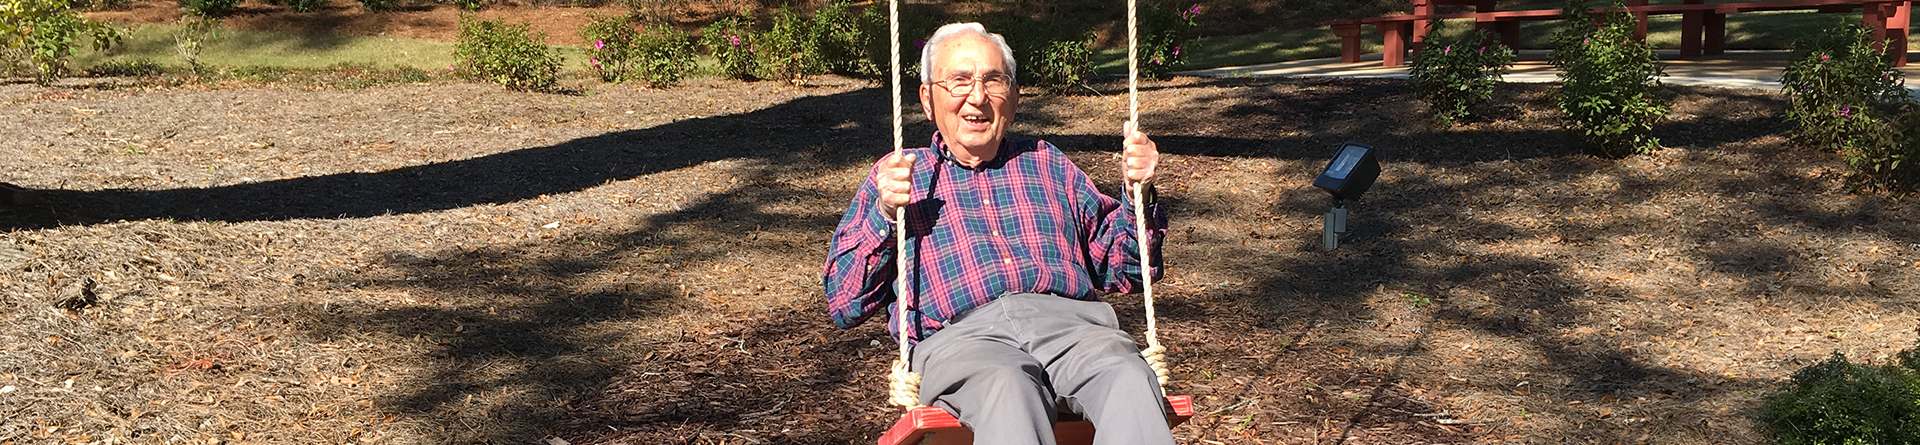 Senior man smiling on a swing